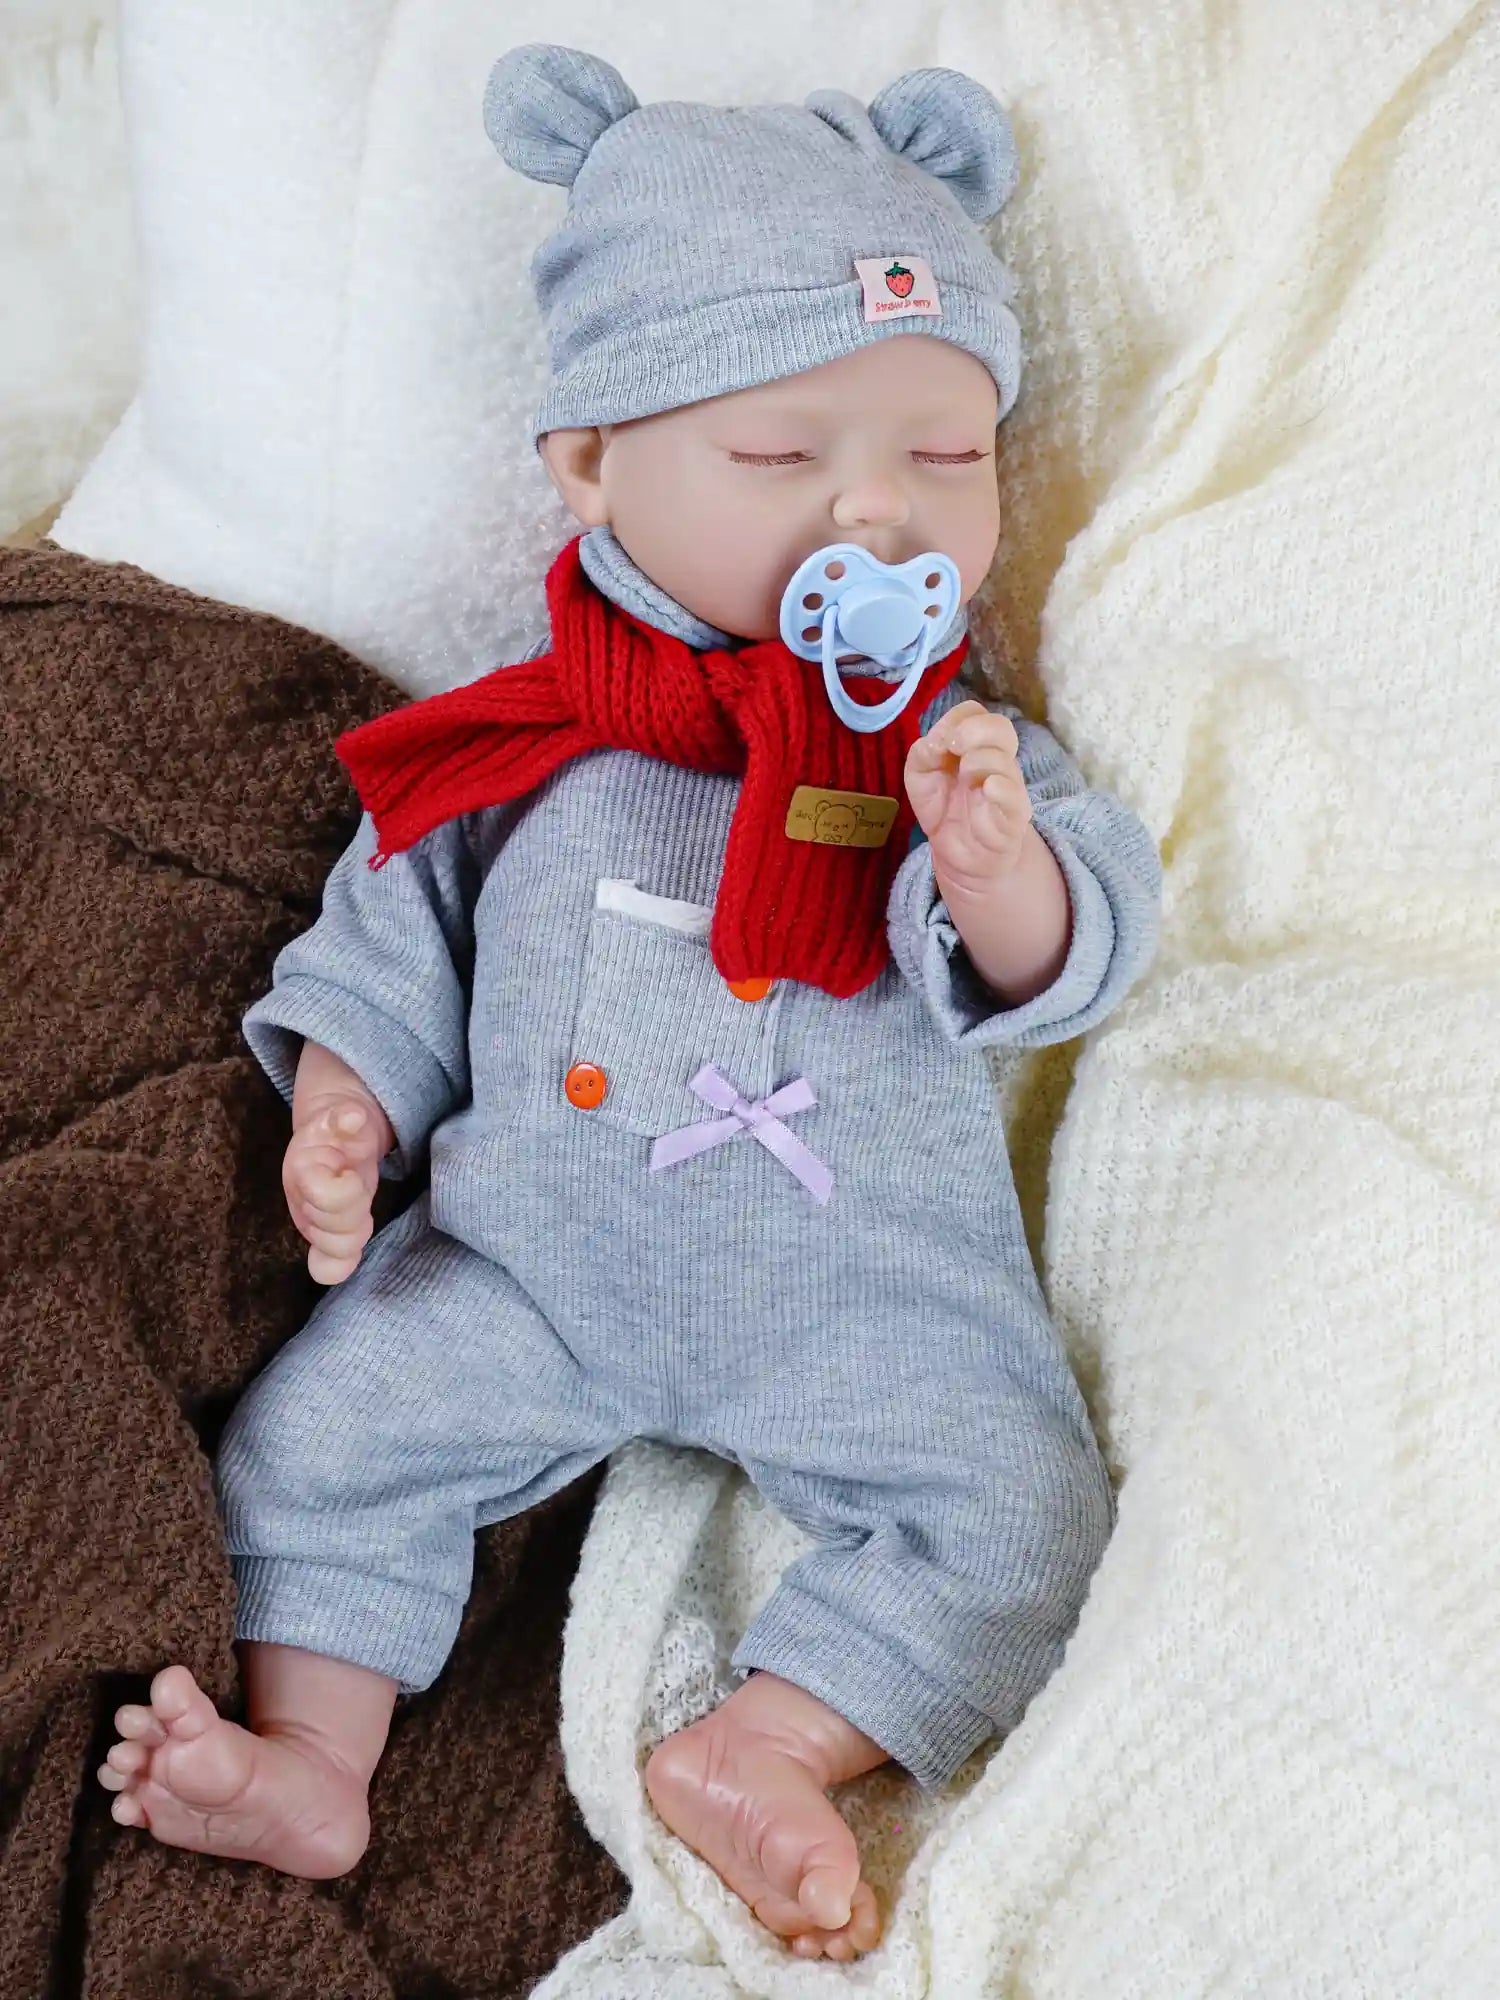 Cute sleeping newborn doll with festive red winter scarf.